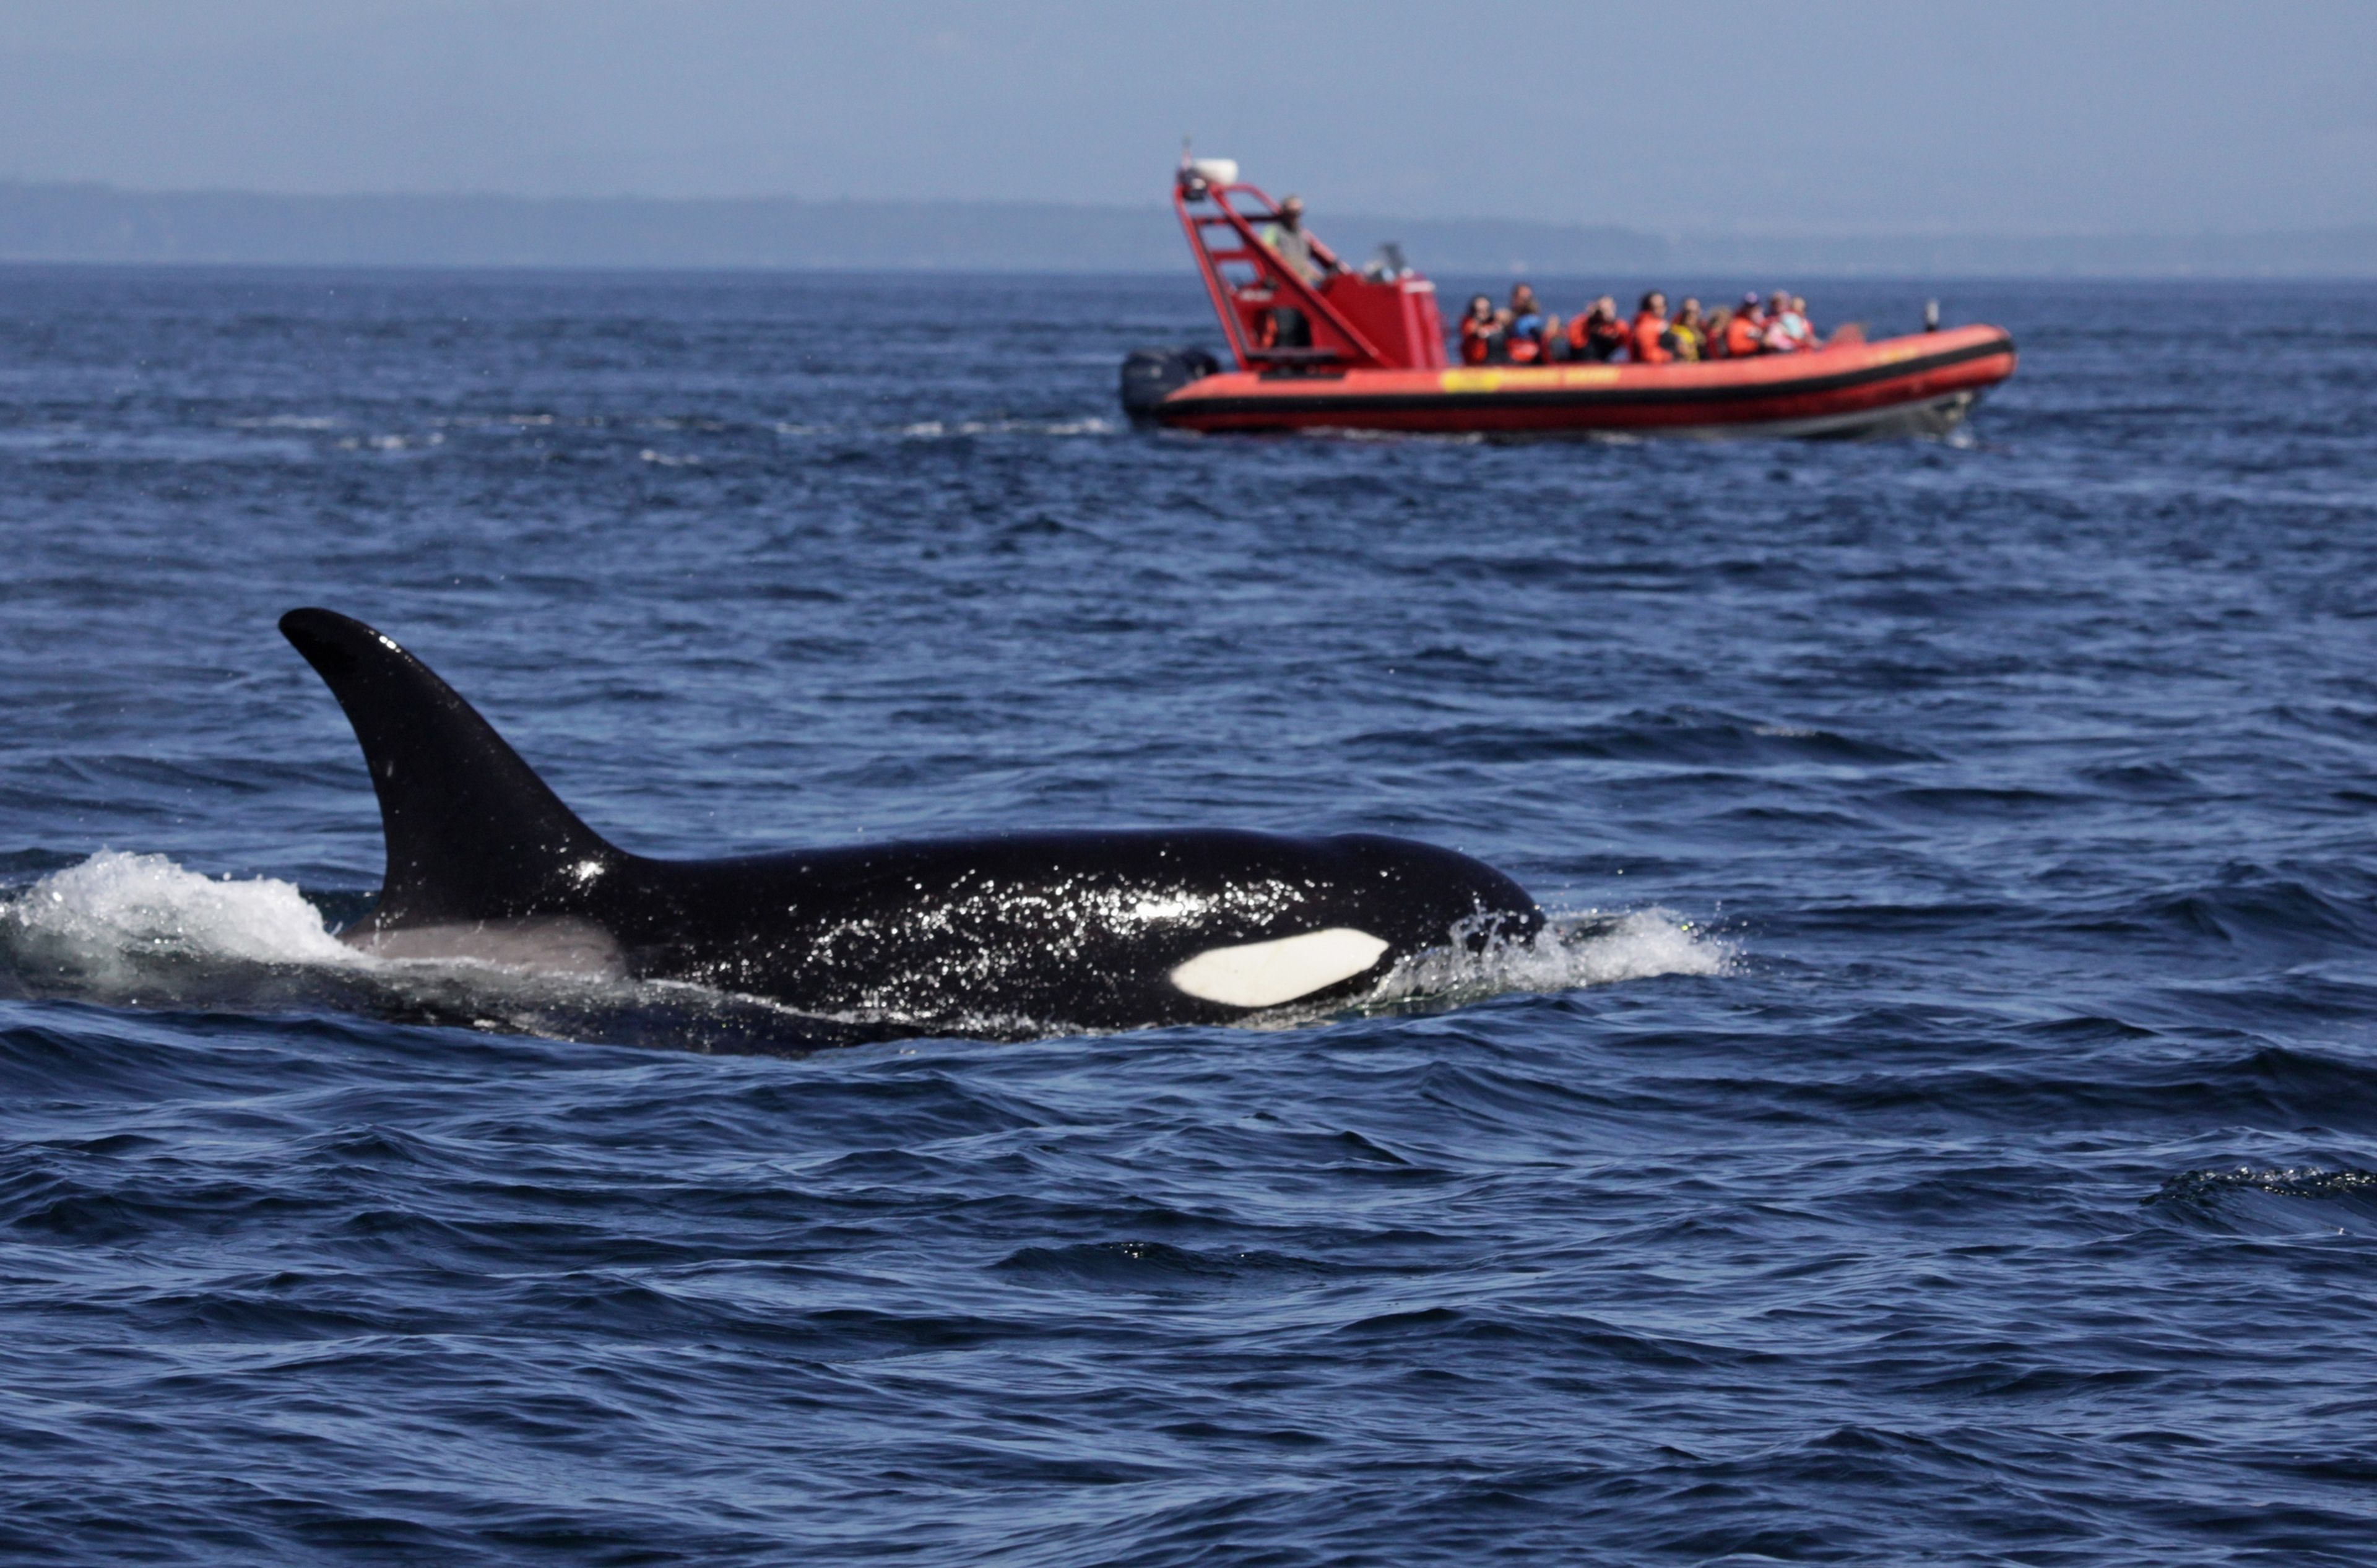  La película Tiburón se hace realidad: las orcas están comenzando a atacar pequeñas embarcaciones en España, y no se sabe por qué